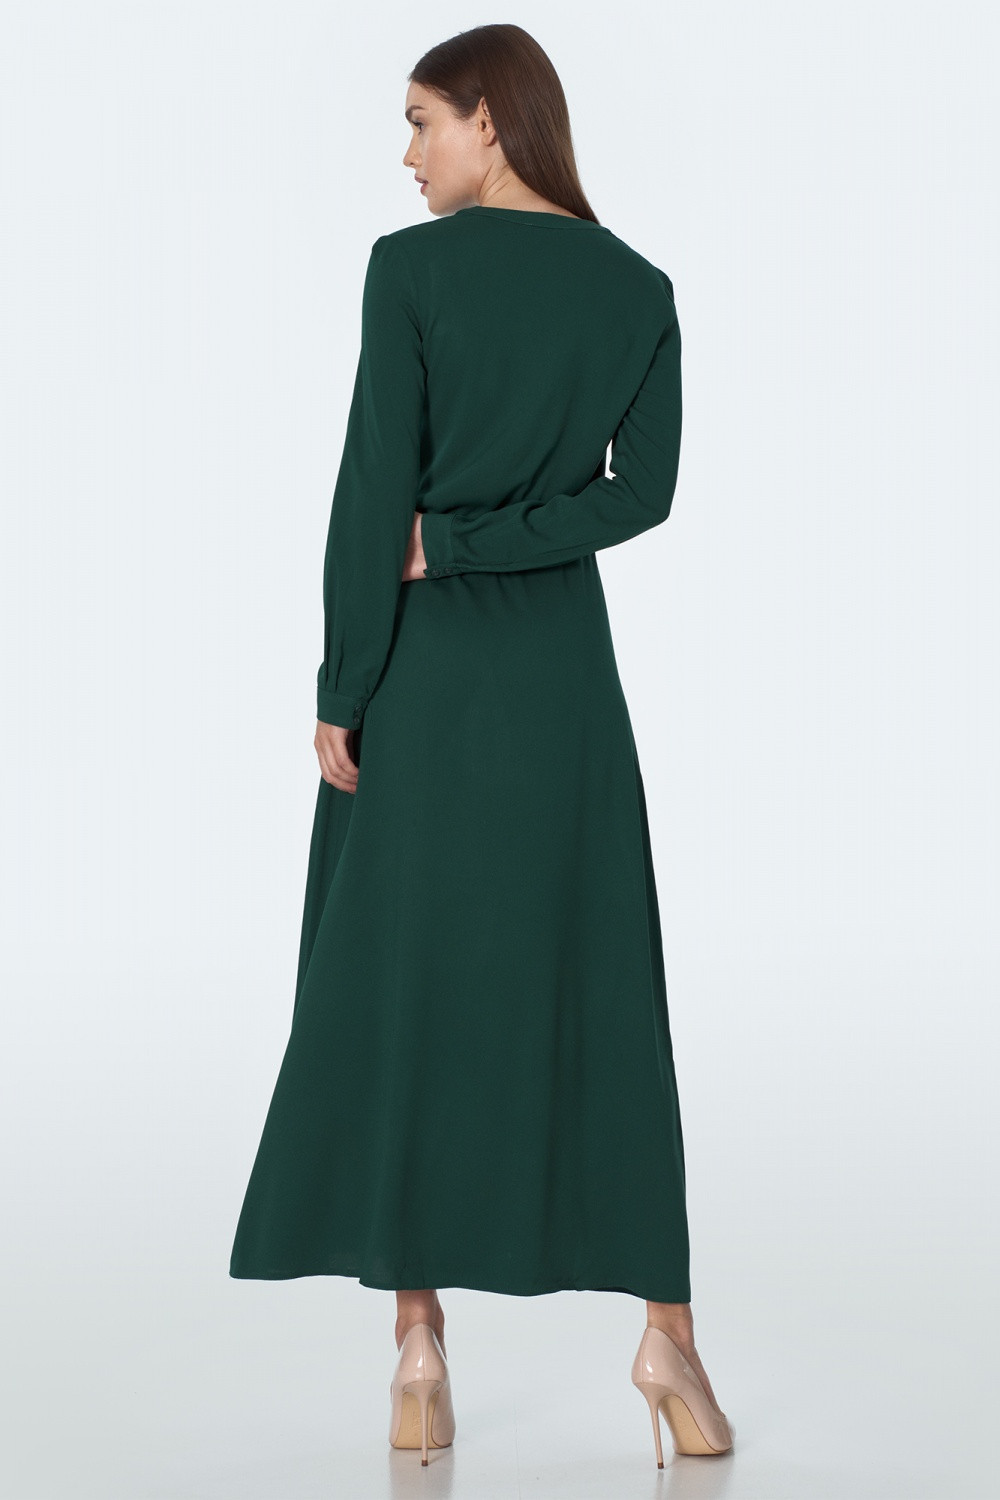 Dámské šaty S154R - Nife 42 tmavě zelená